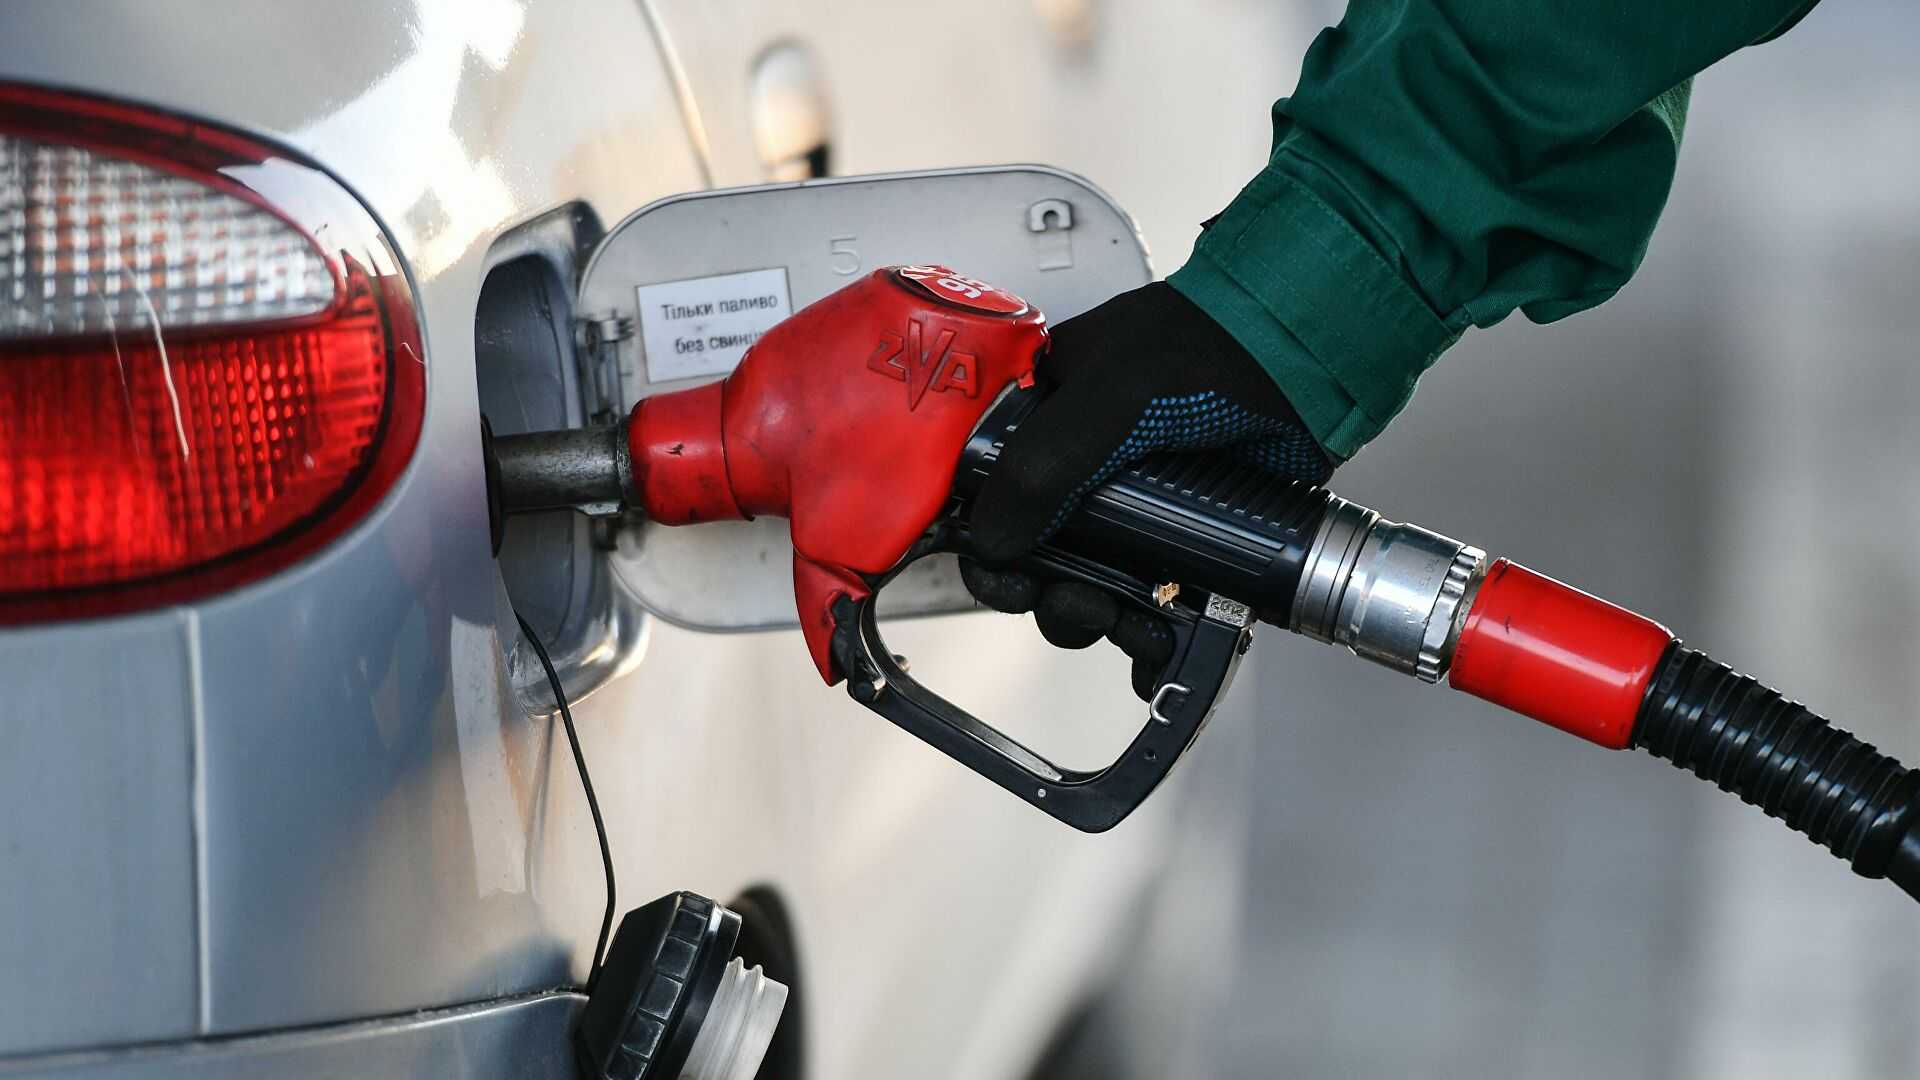 Минэнерго обосновали рост цен на бензин в марте 2021 года